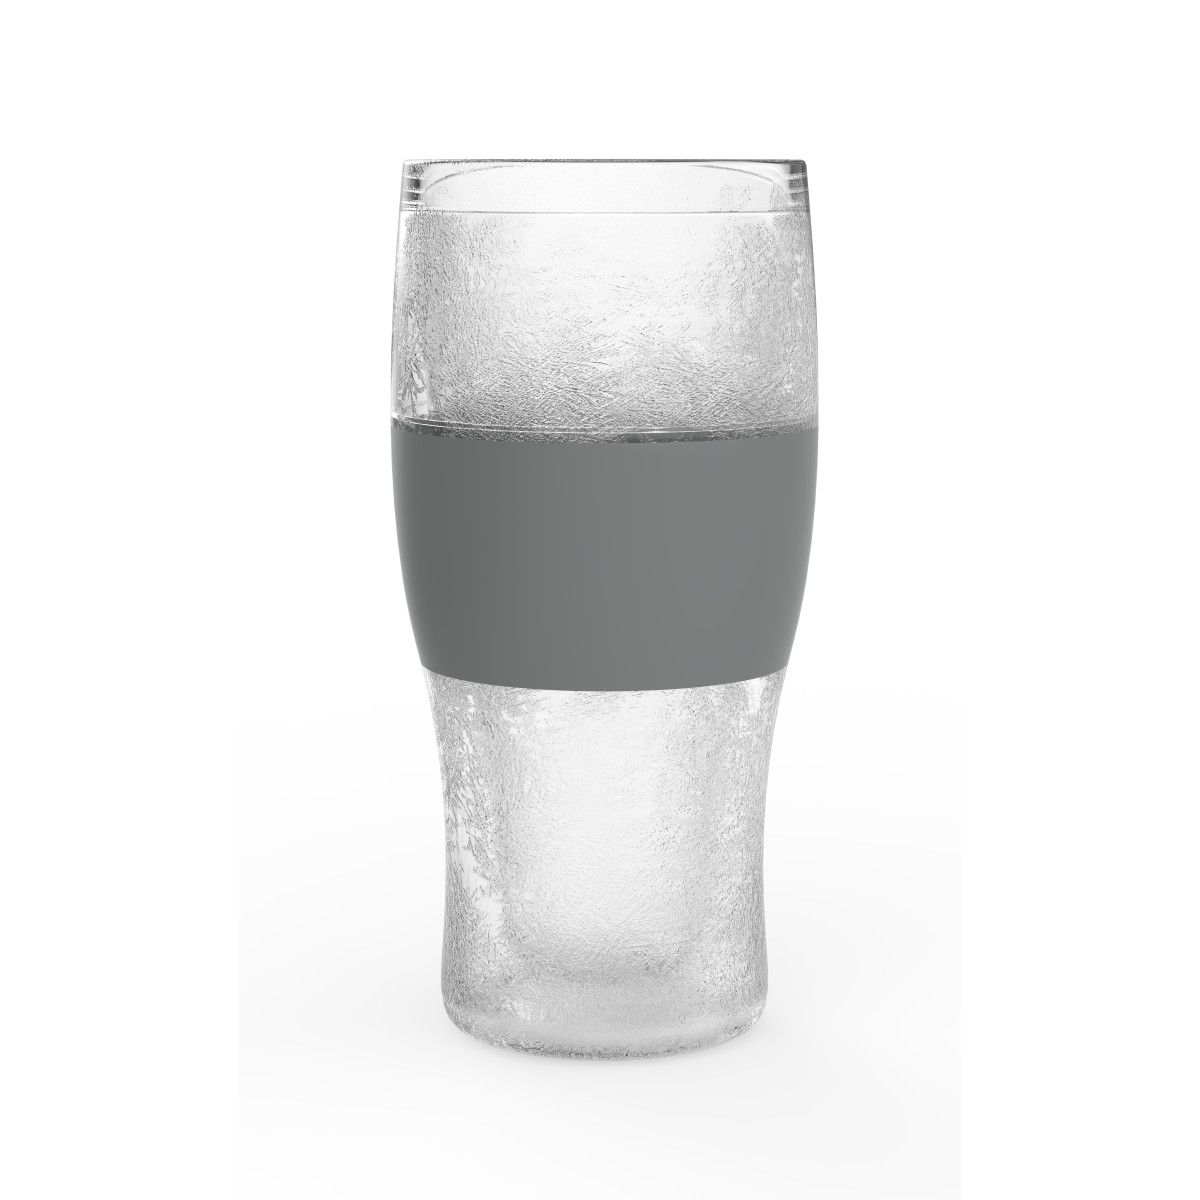 Host Freeze Cooling Pint Glass